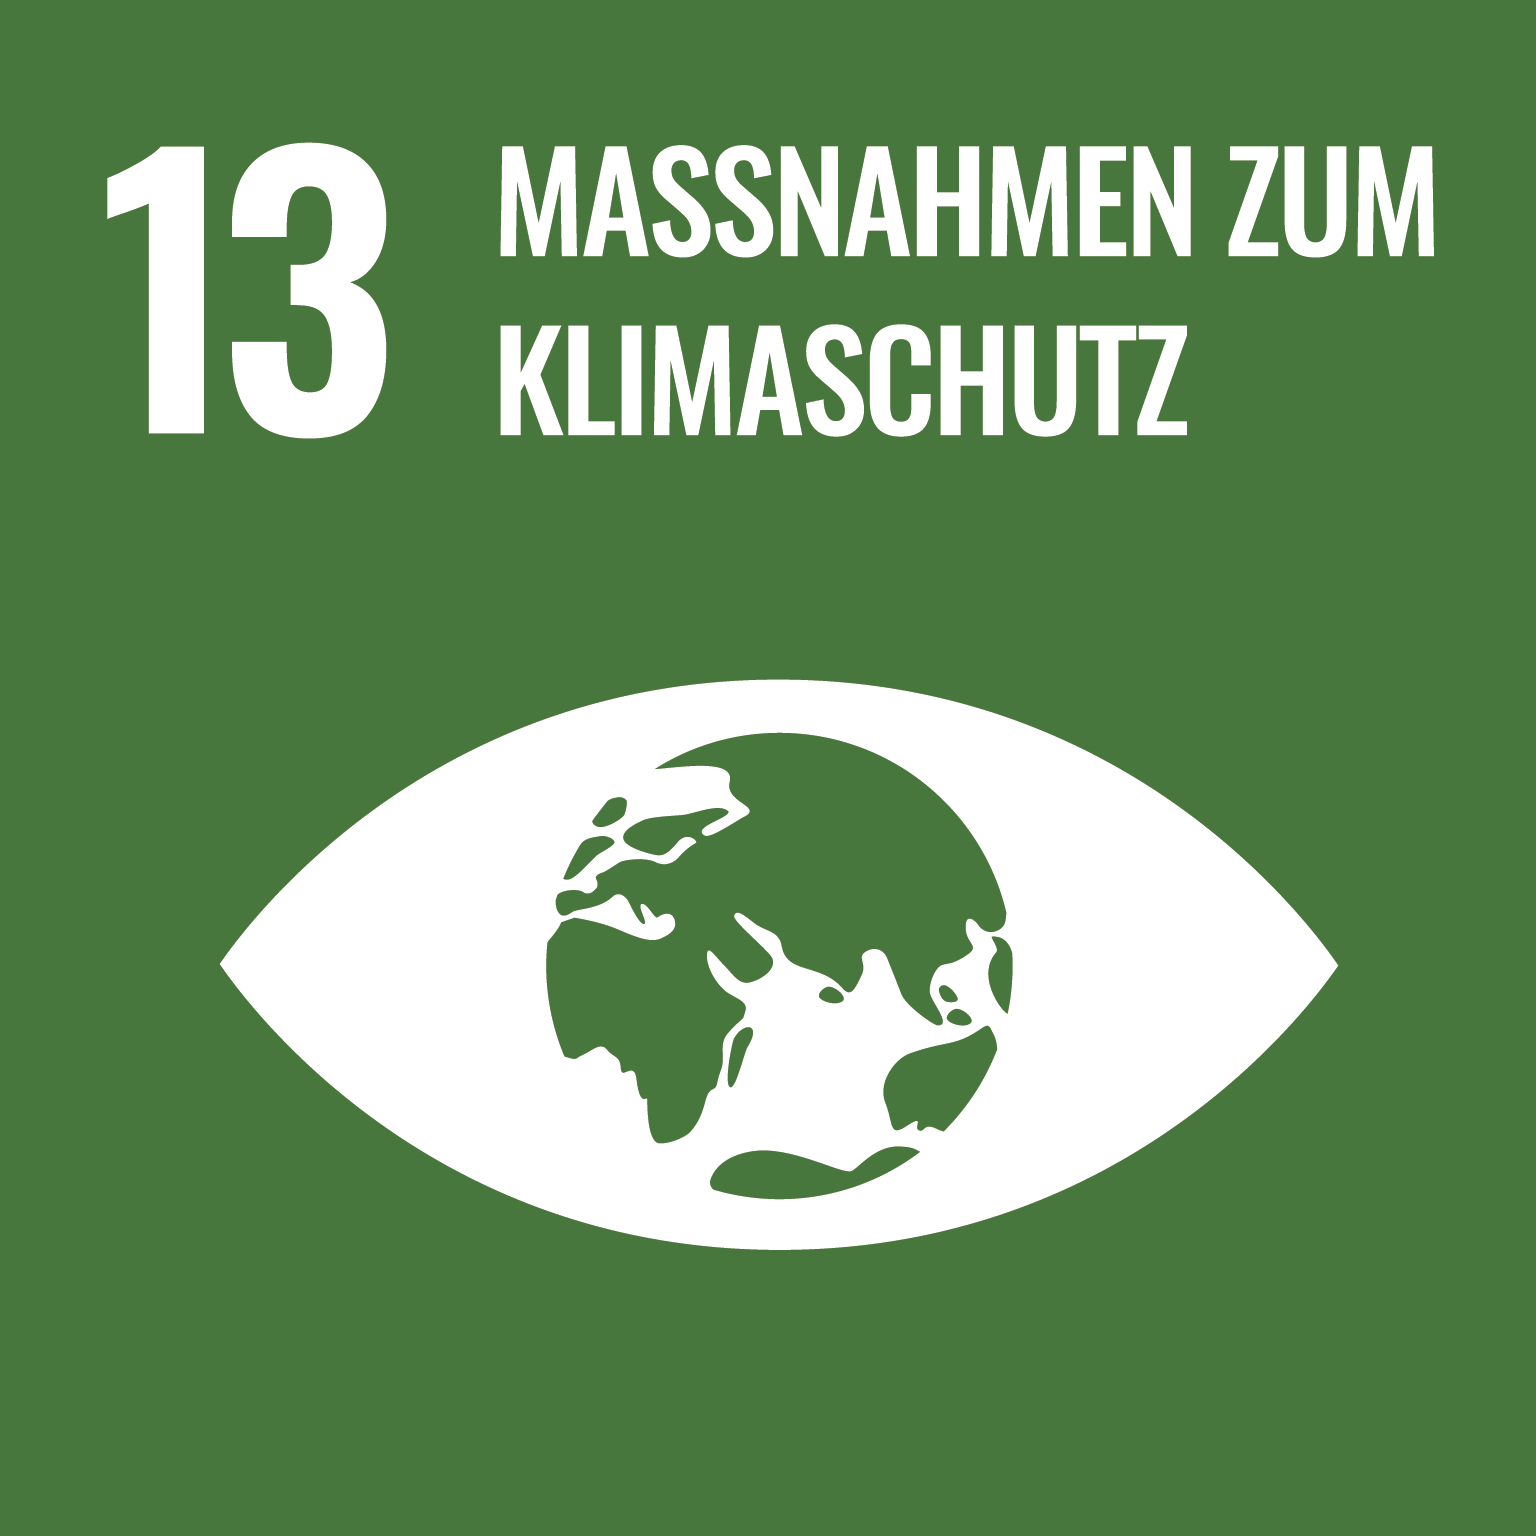 social development goal 13: Maßnahmen zum Klimaschutz